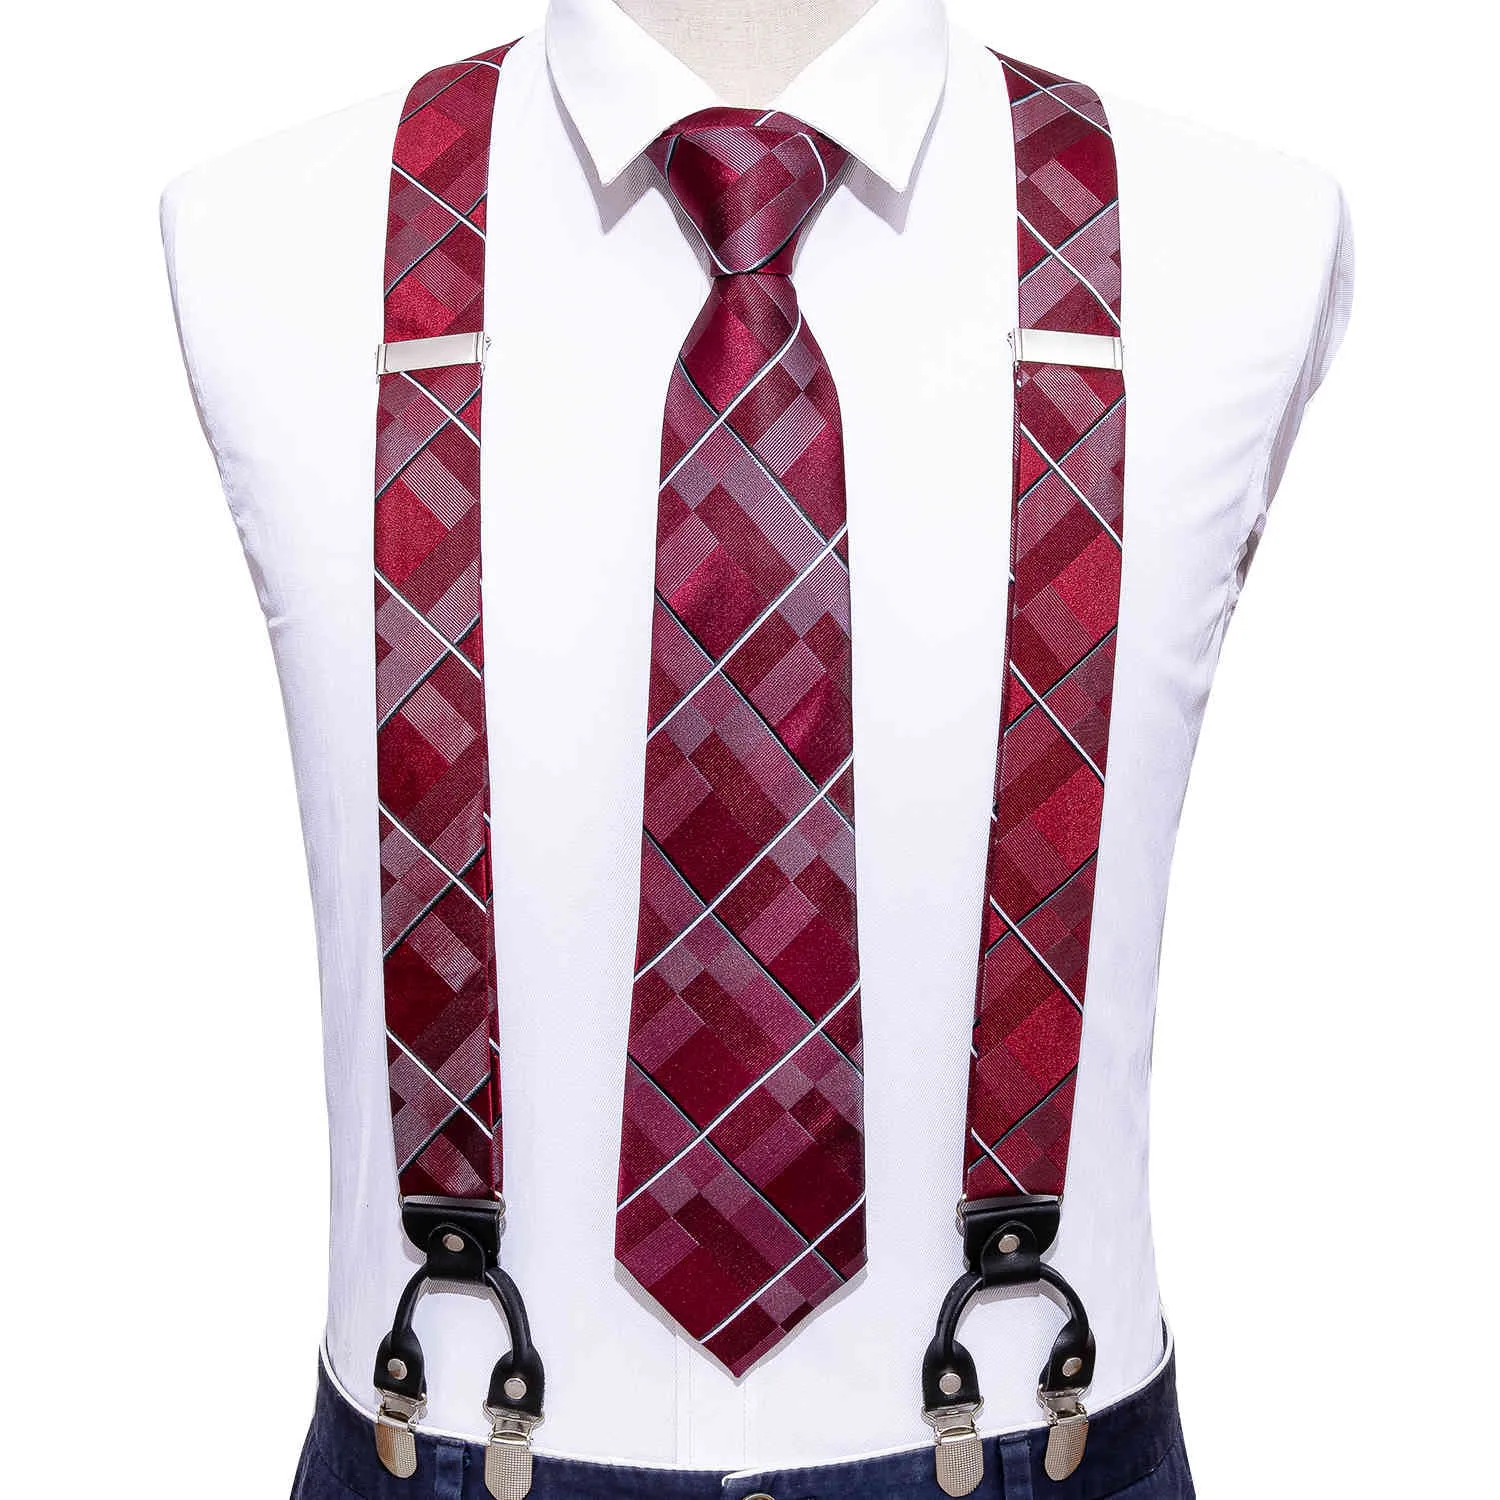 BarryWang Red Fashion Neuheit Verstellbare Y-Rückseite Seidenset Krawatte für Männer Party Hochzeit Y-Form 6 Clip Hosenträger BarryWang